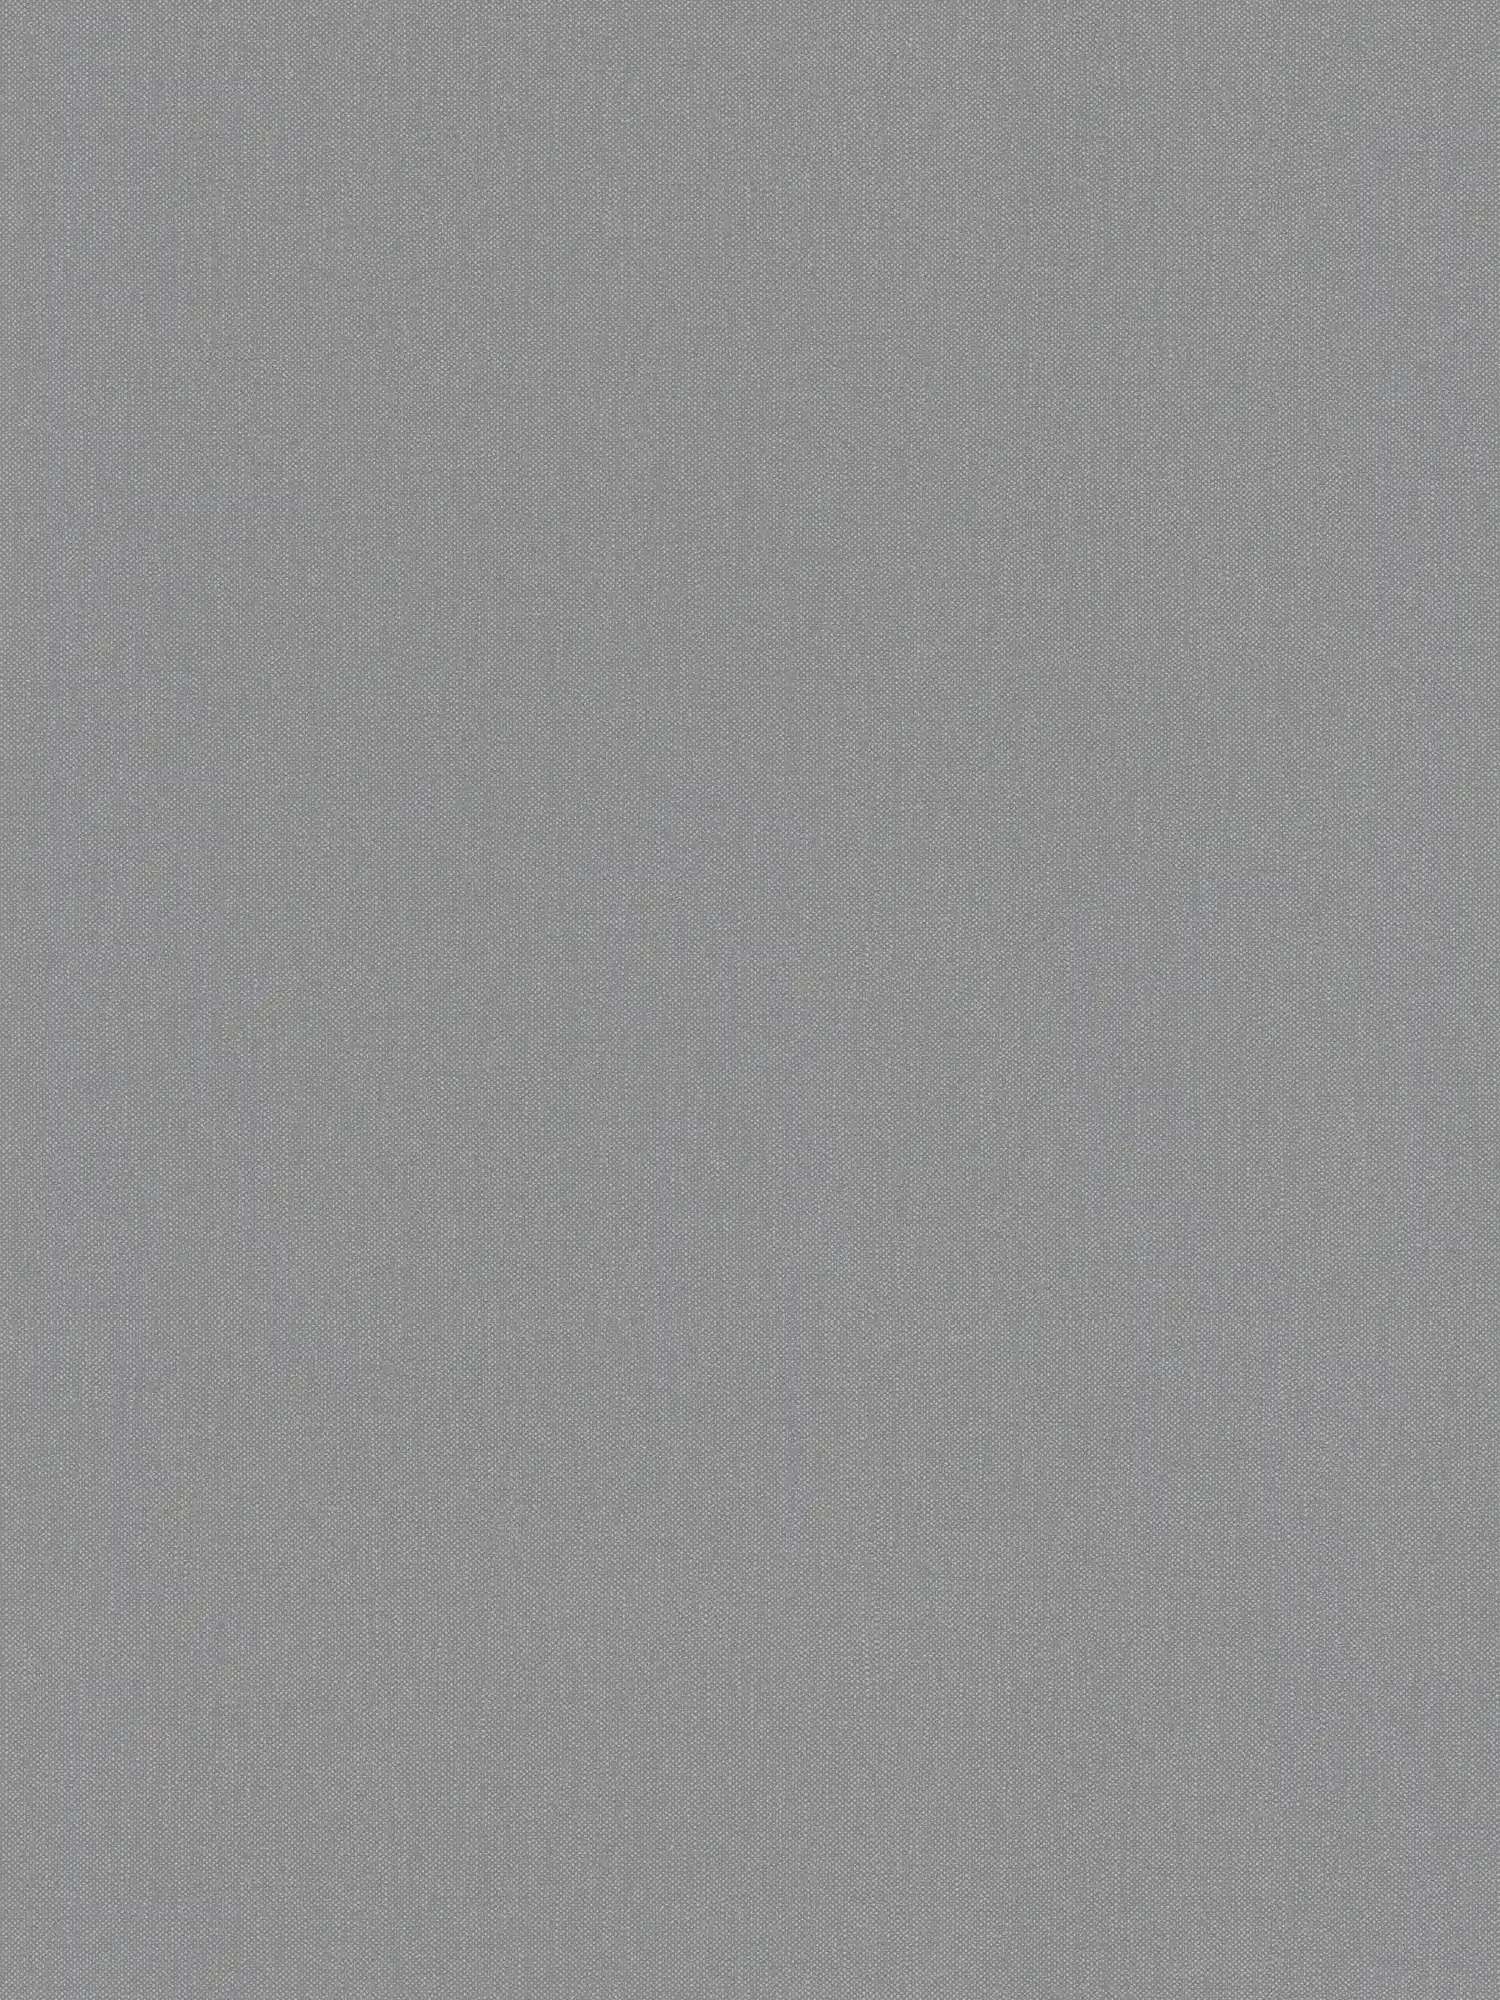 Papel pintado de aspecto de lino con textura en un elegante color gris
